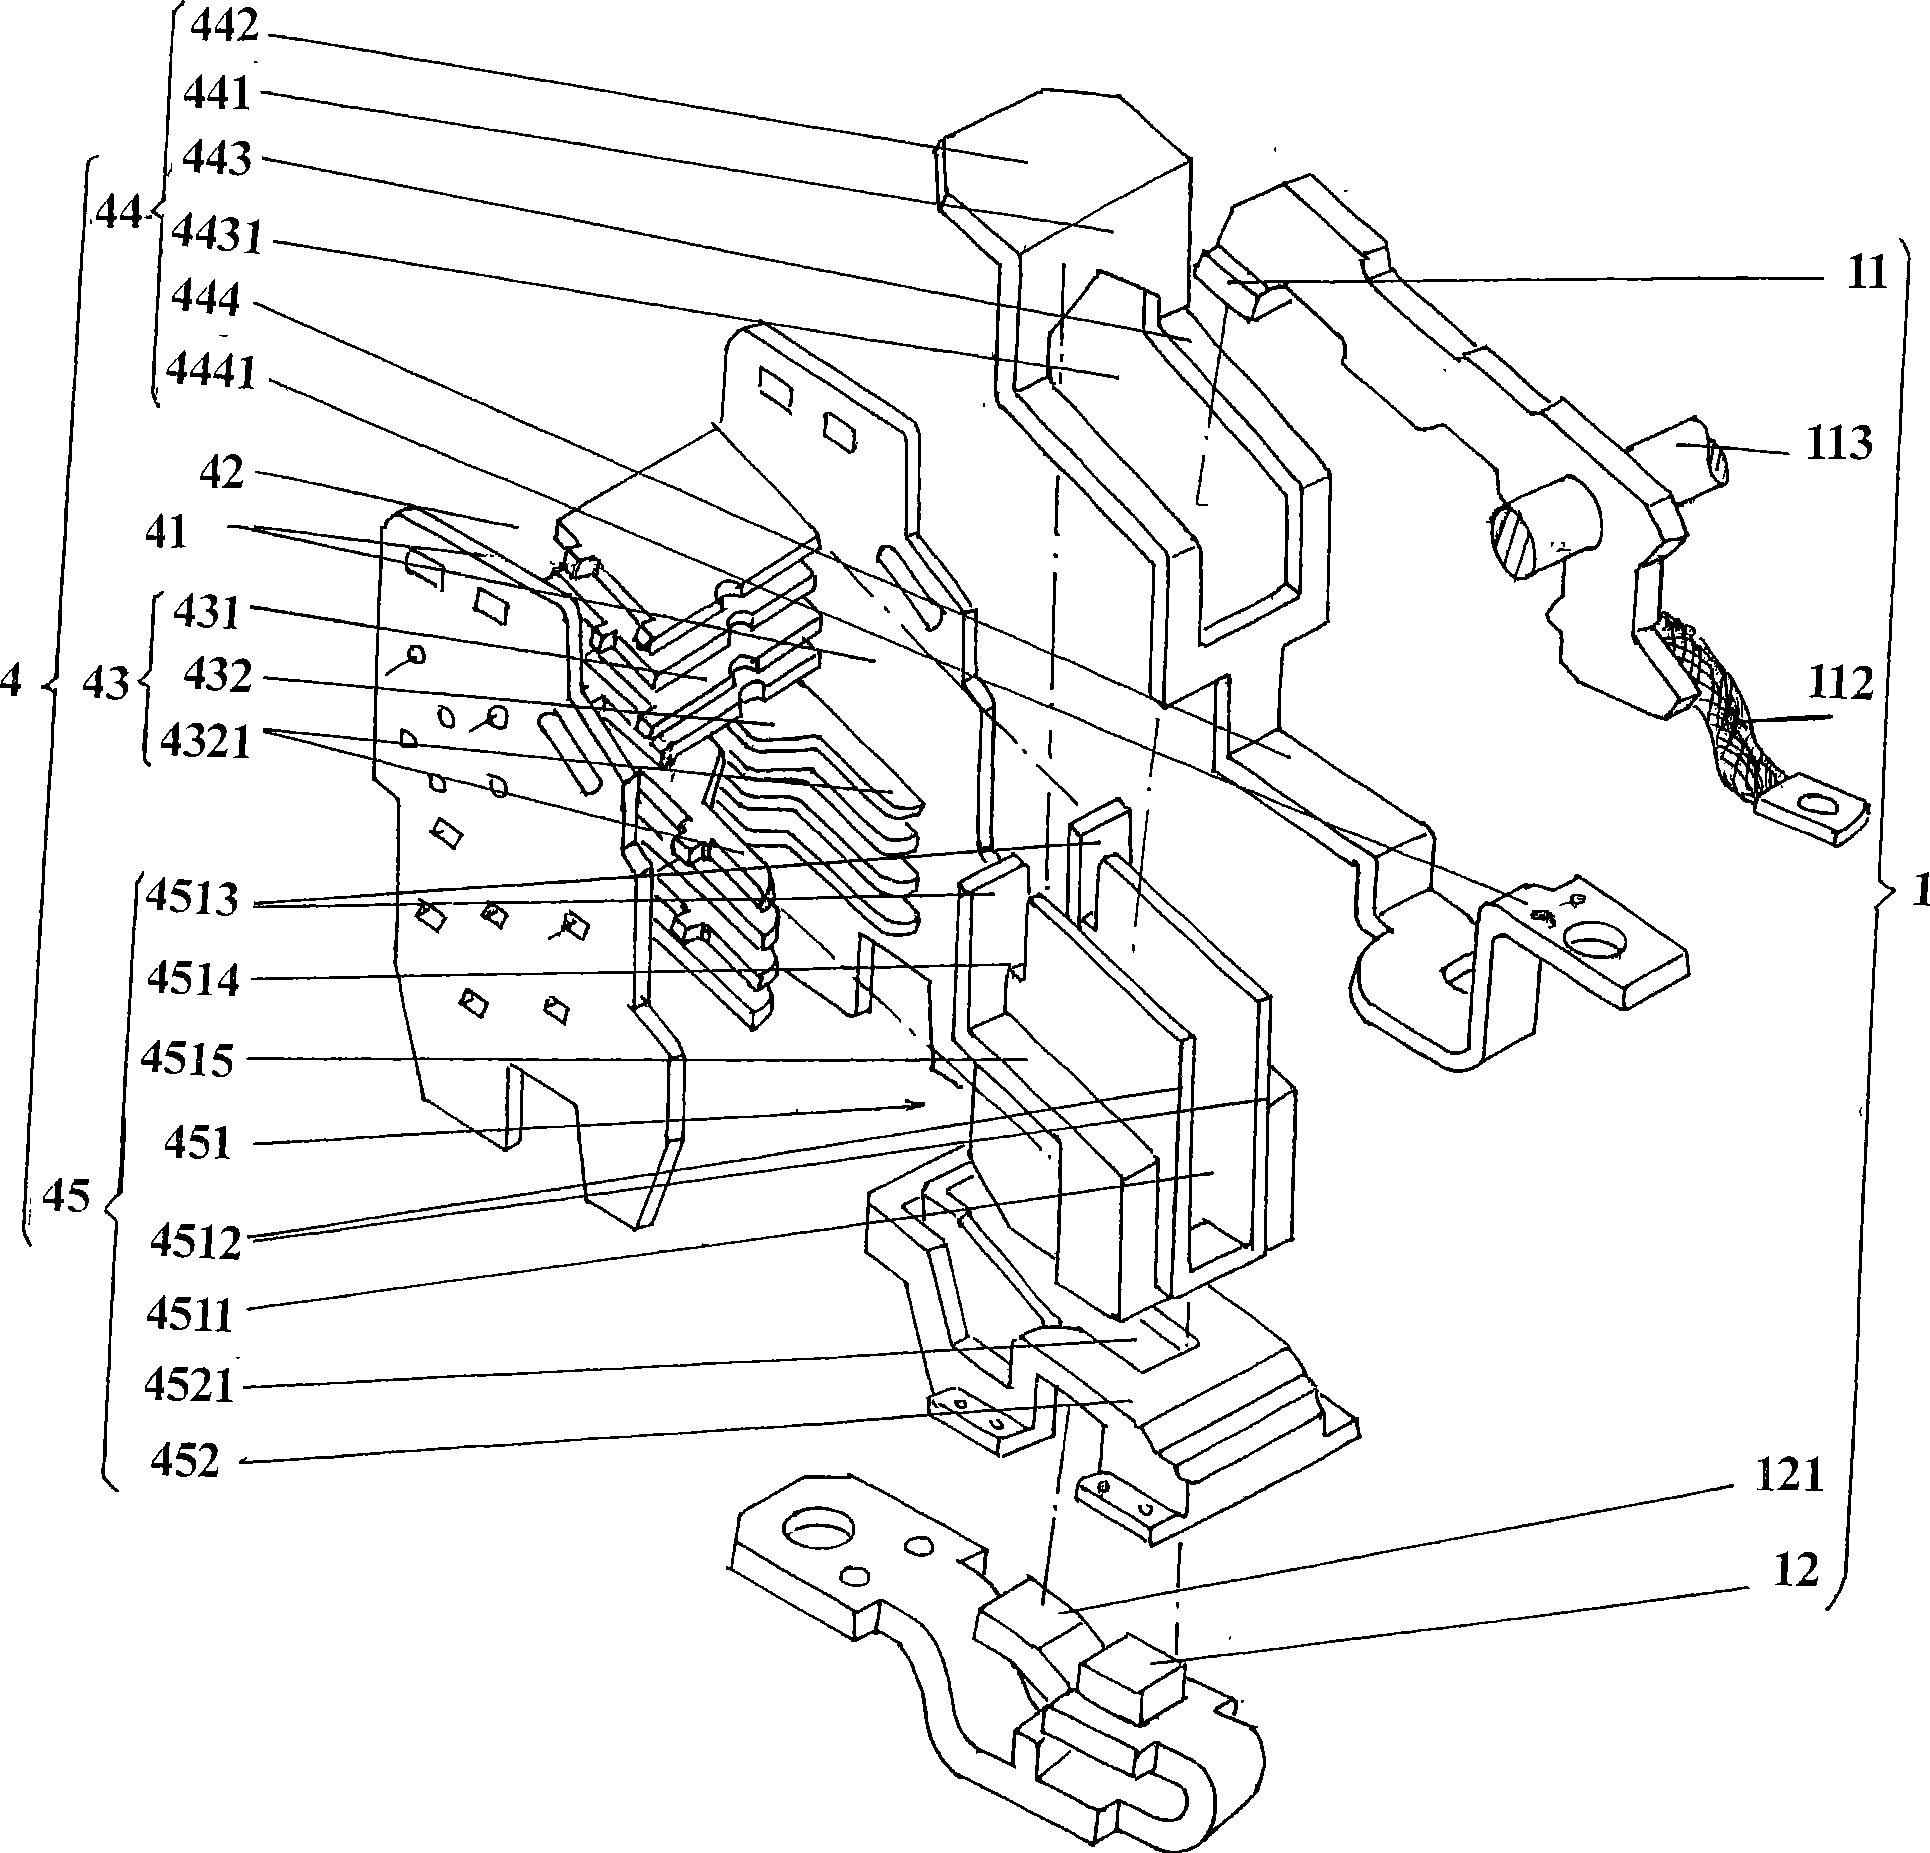 Low-voltage circuit breaker